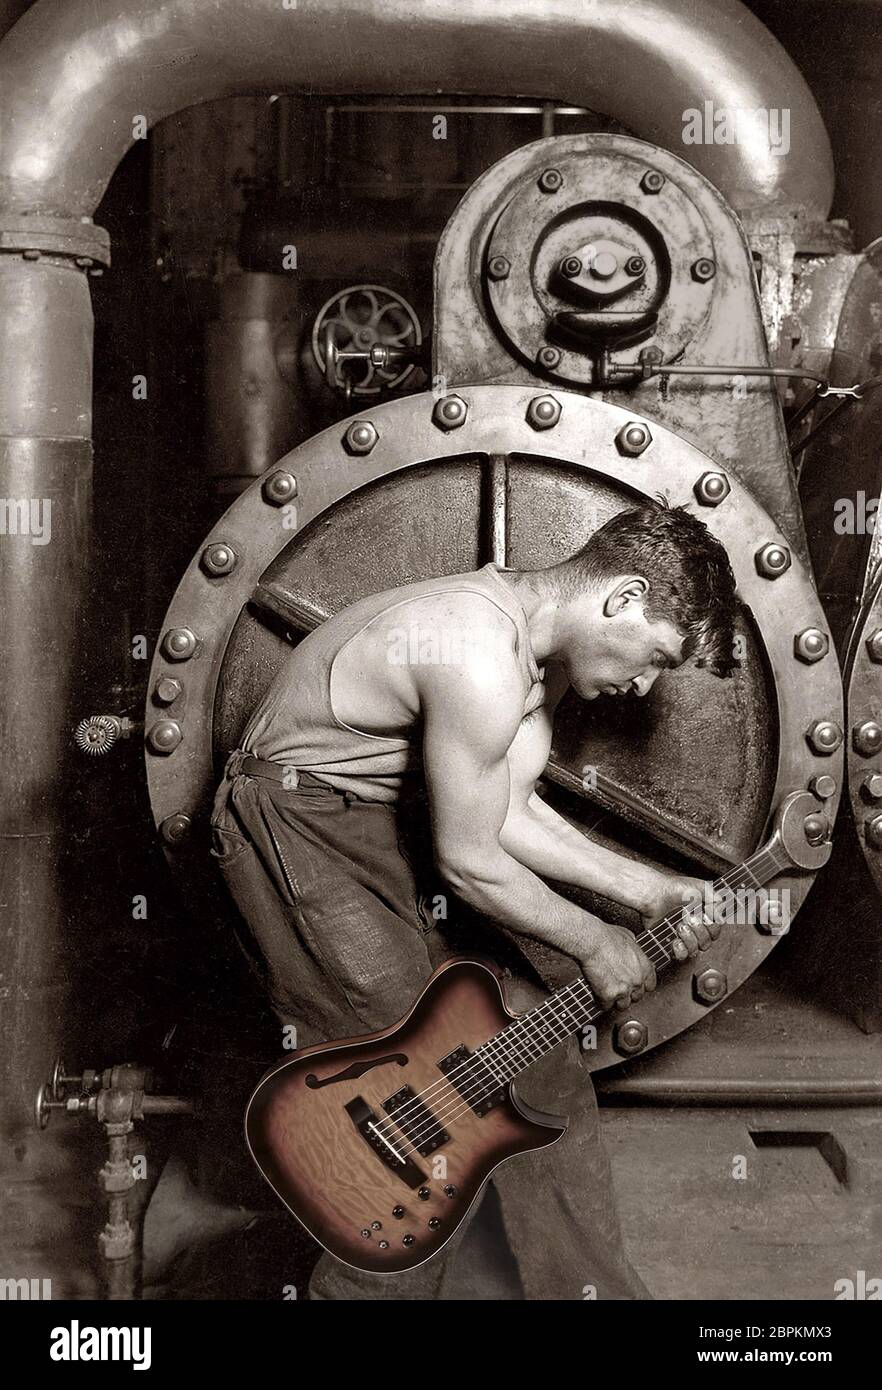 Immagine composita di chitarra elettrica e Power House Mechanic che lavora con una chiave per chitarra. 1920 immagine di Lewis W Hine. Foto Stock